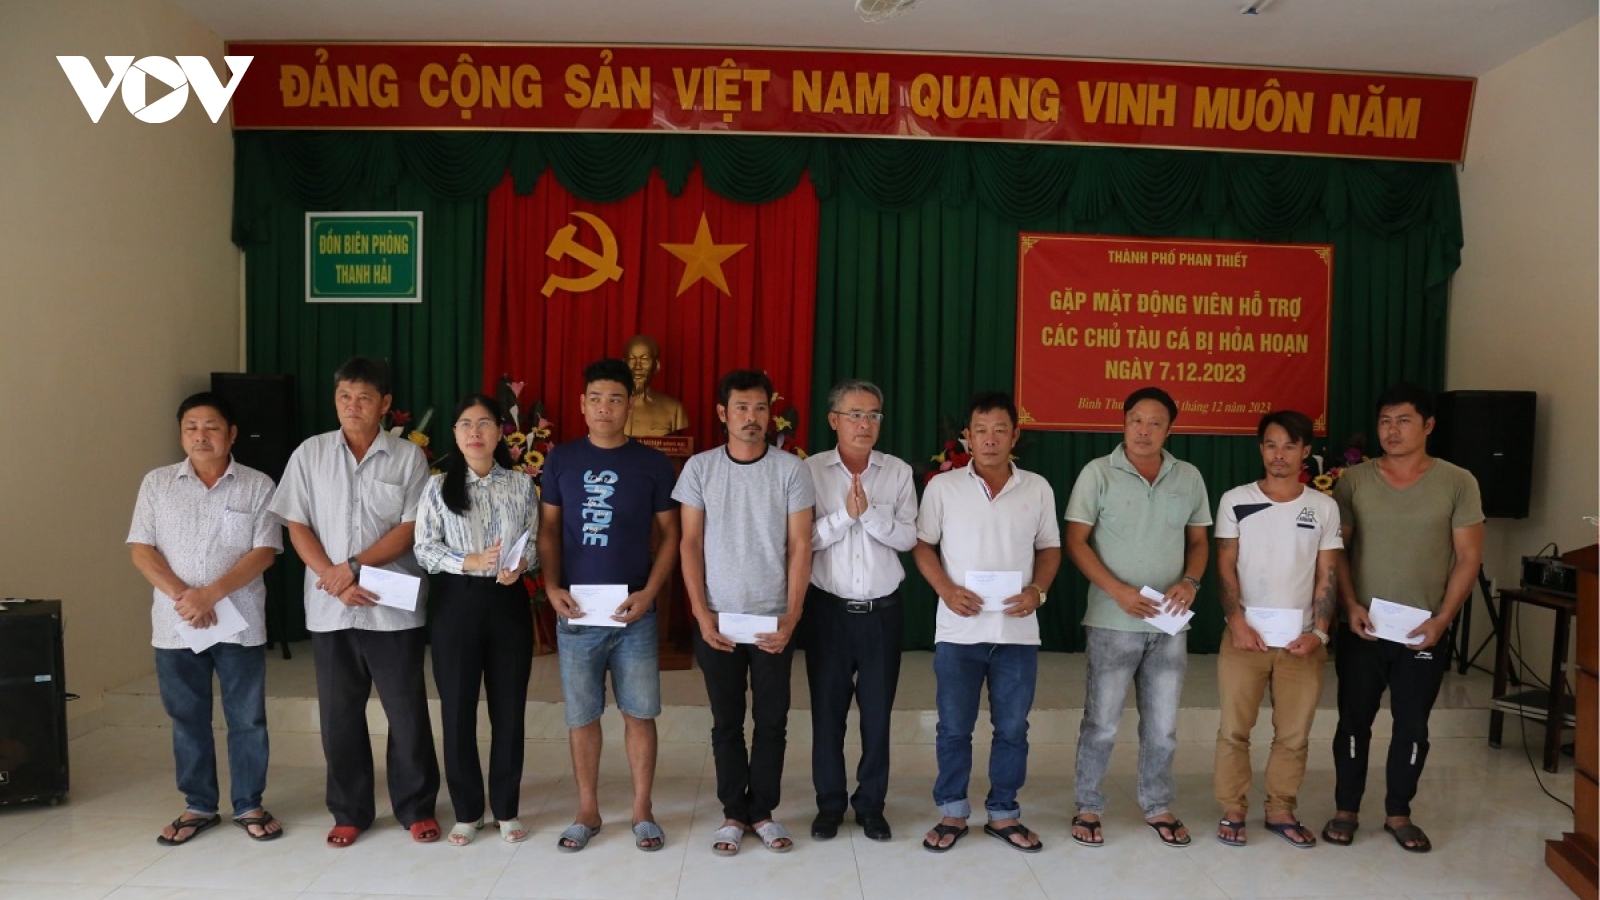 Khen thưởng 2 ngư dân tham gia chữa cháy khu vực neo đậu tàu cá ở Bình Thuận